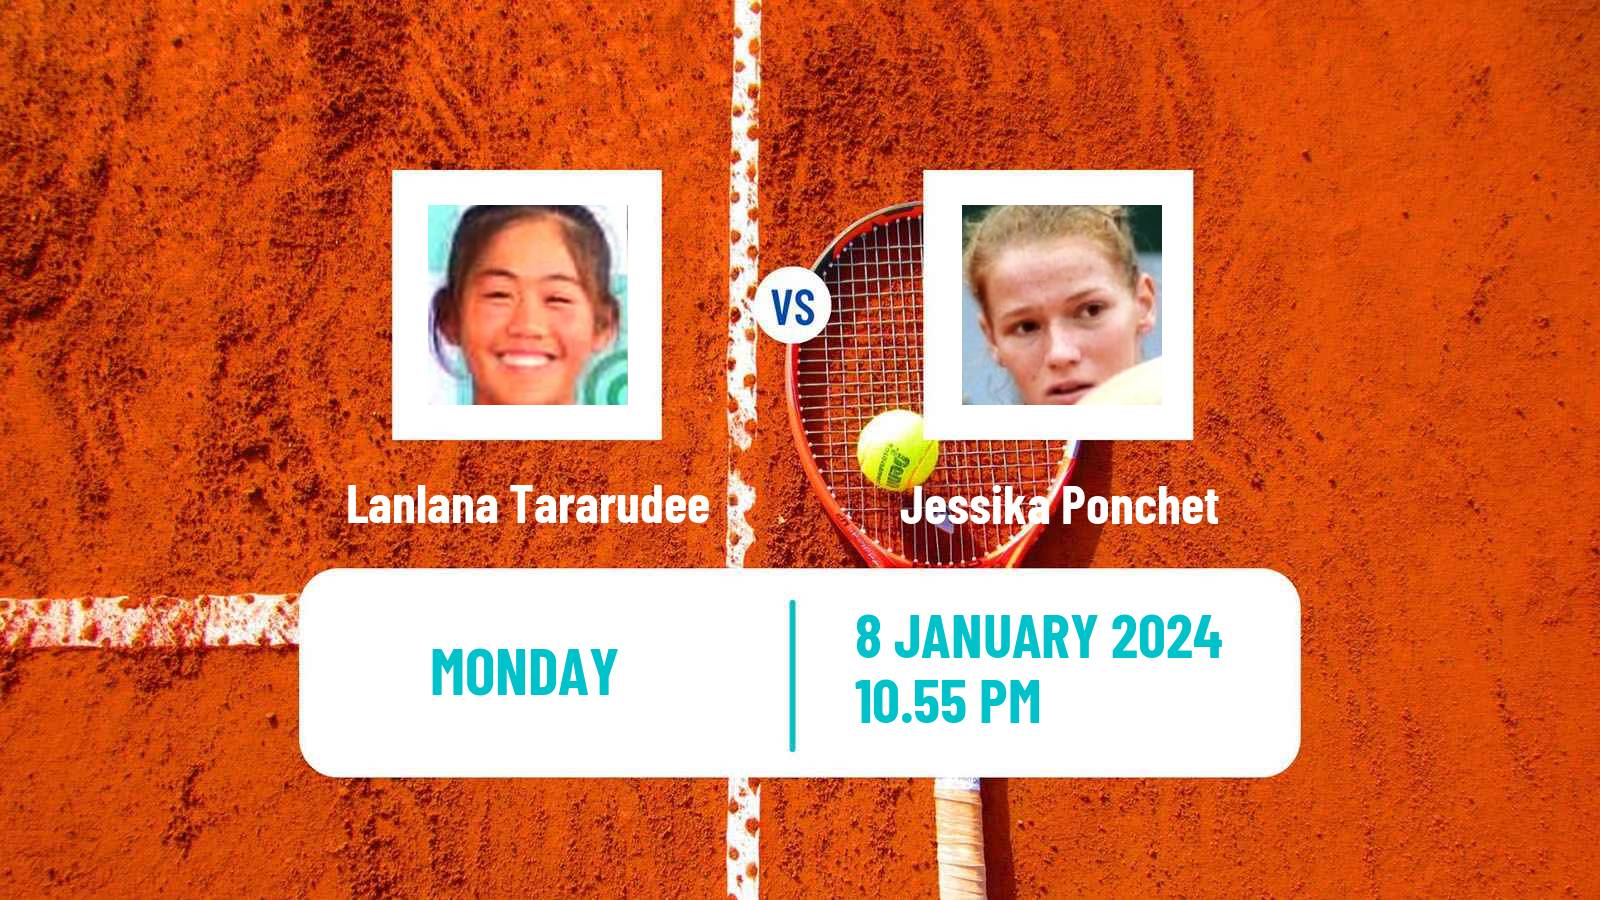 Tennis WTA Australian Open Lanlana Tararudee - Jessika Ponchet